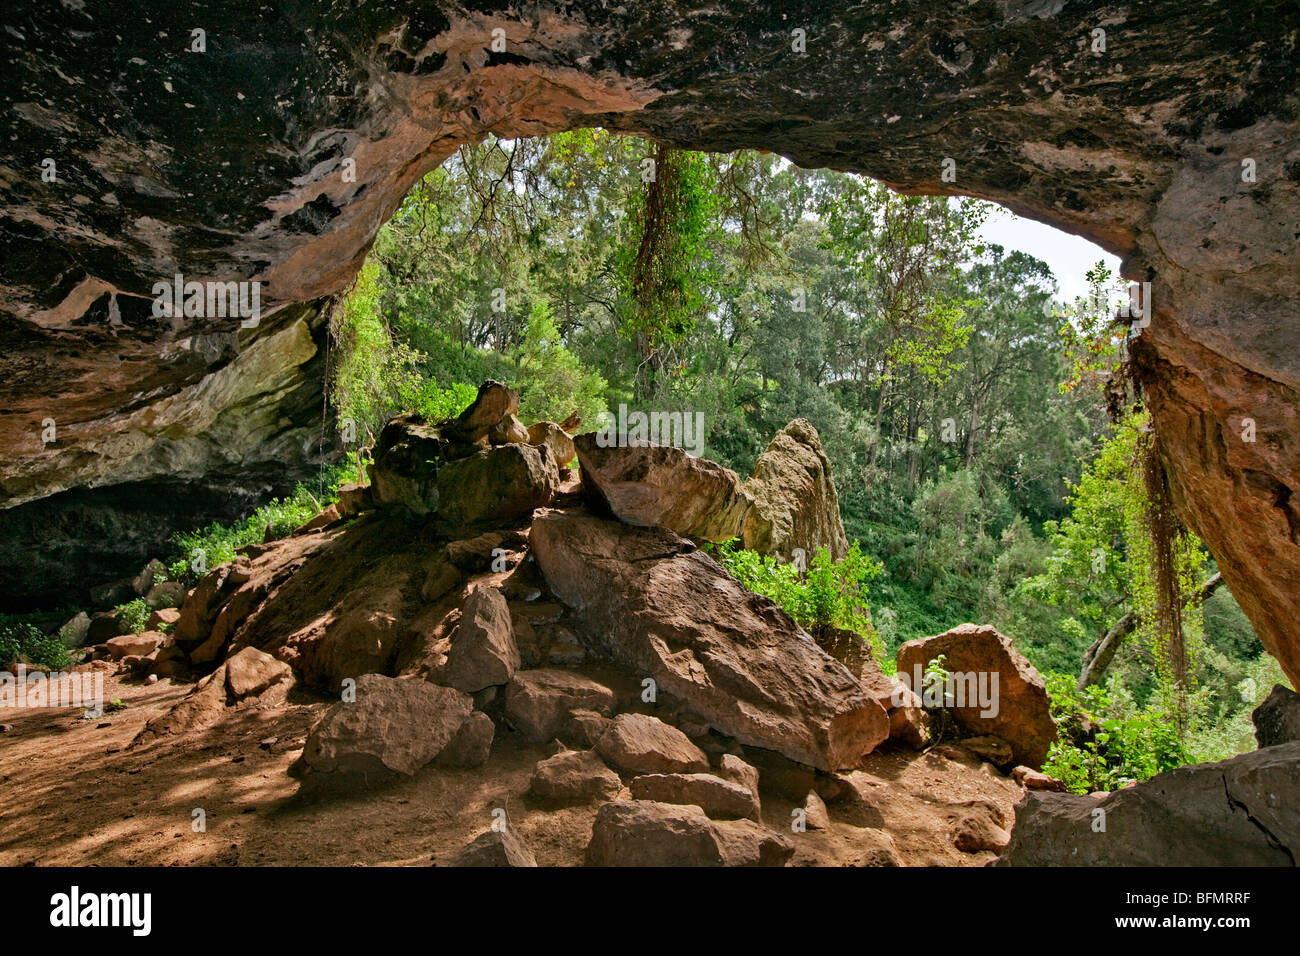 Kenia. Der Eingang zum Kitum Cave an den Hängen des Mount Elgon. Elefanten kommen manchmal für Salz in der Nacht zu graben. Stockfoto